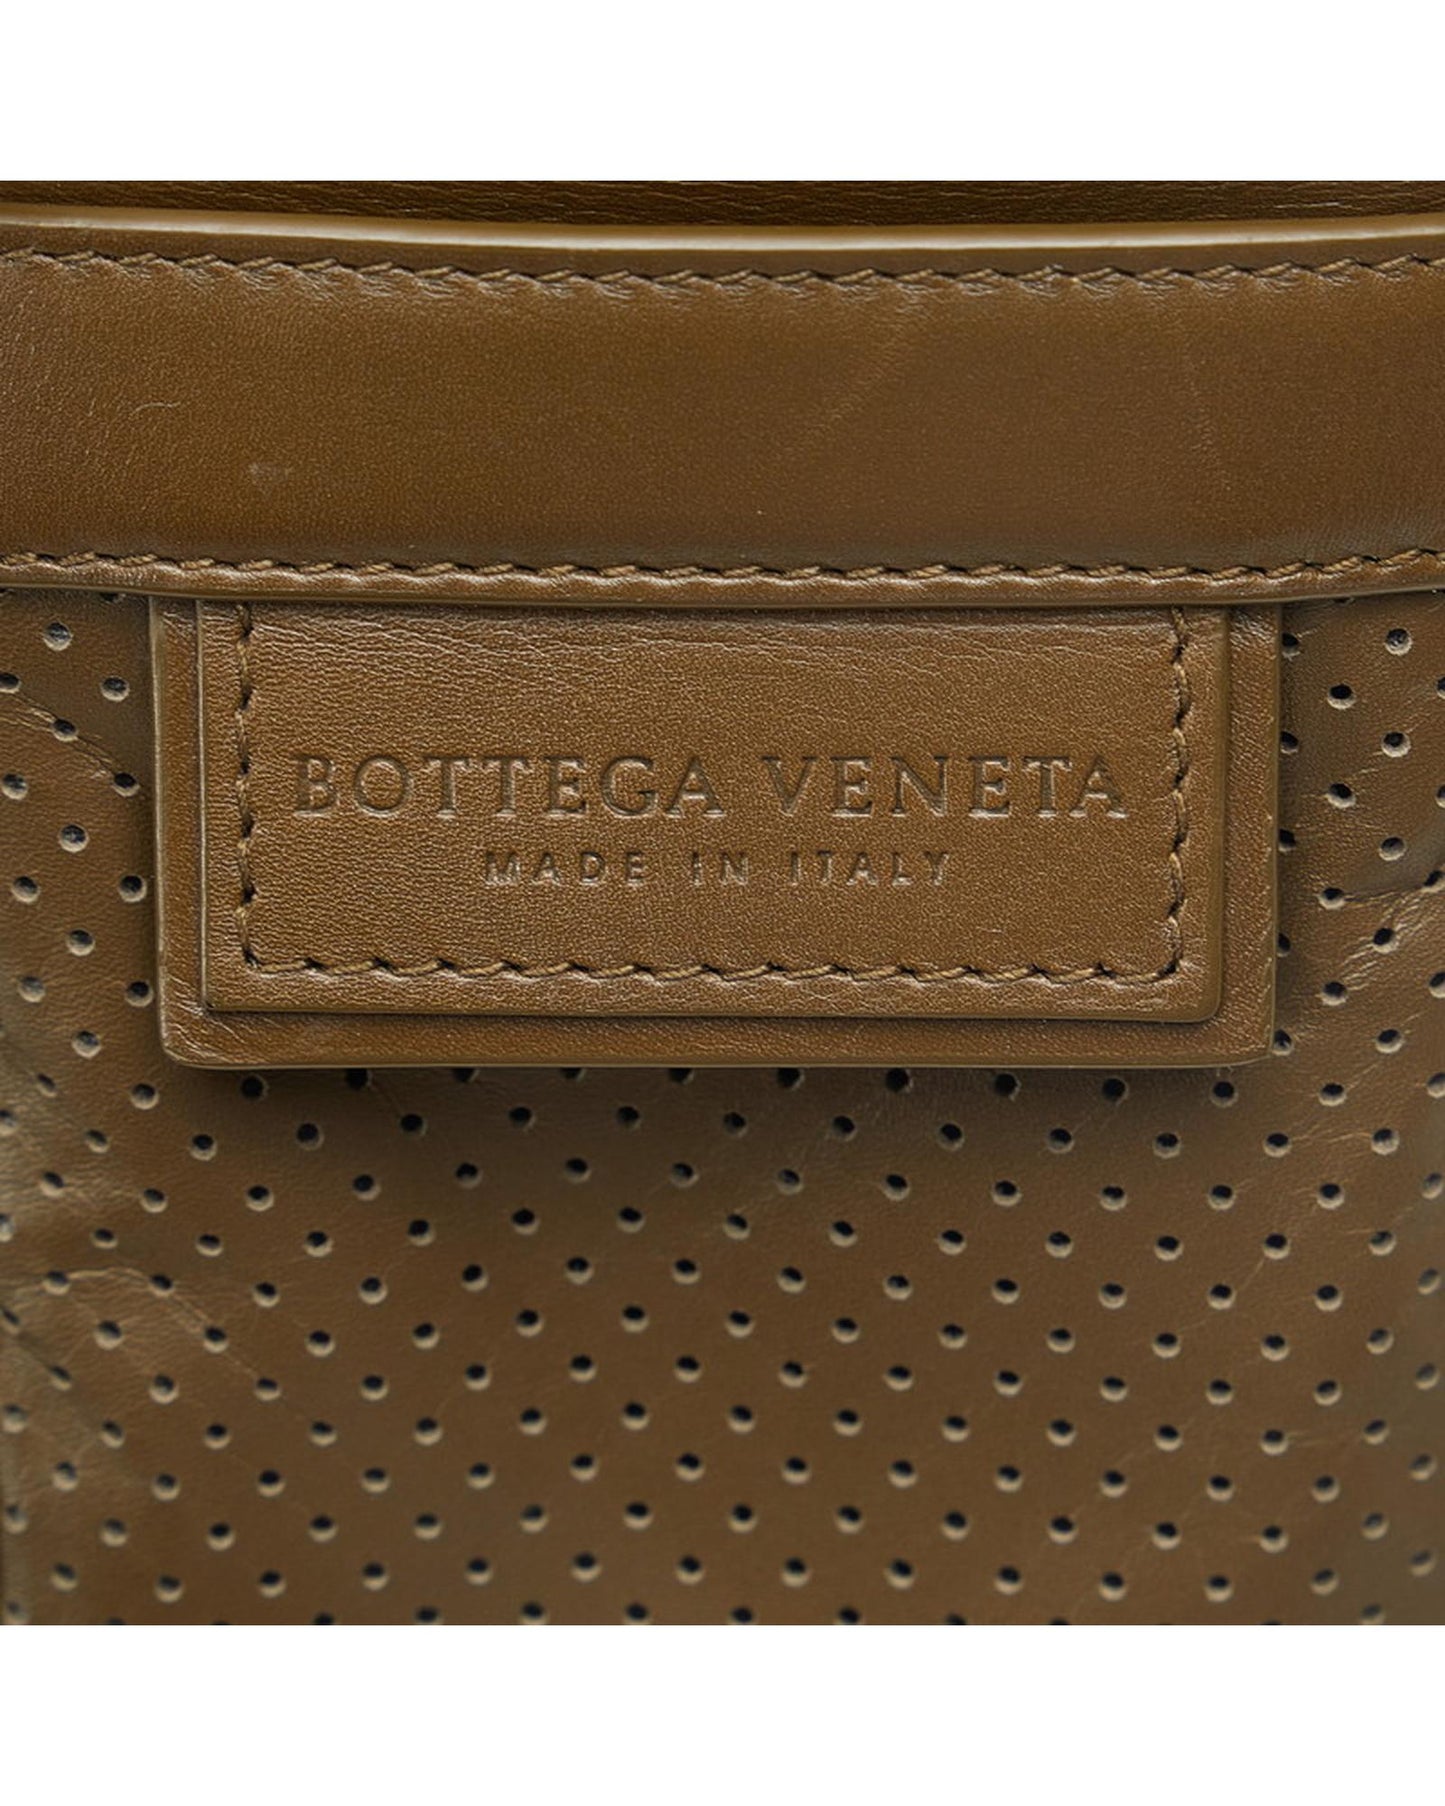 Bottega Veneta Women's Brown Perforated Leather Crossbody Bag in Brown